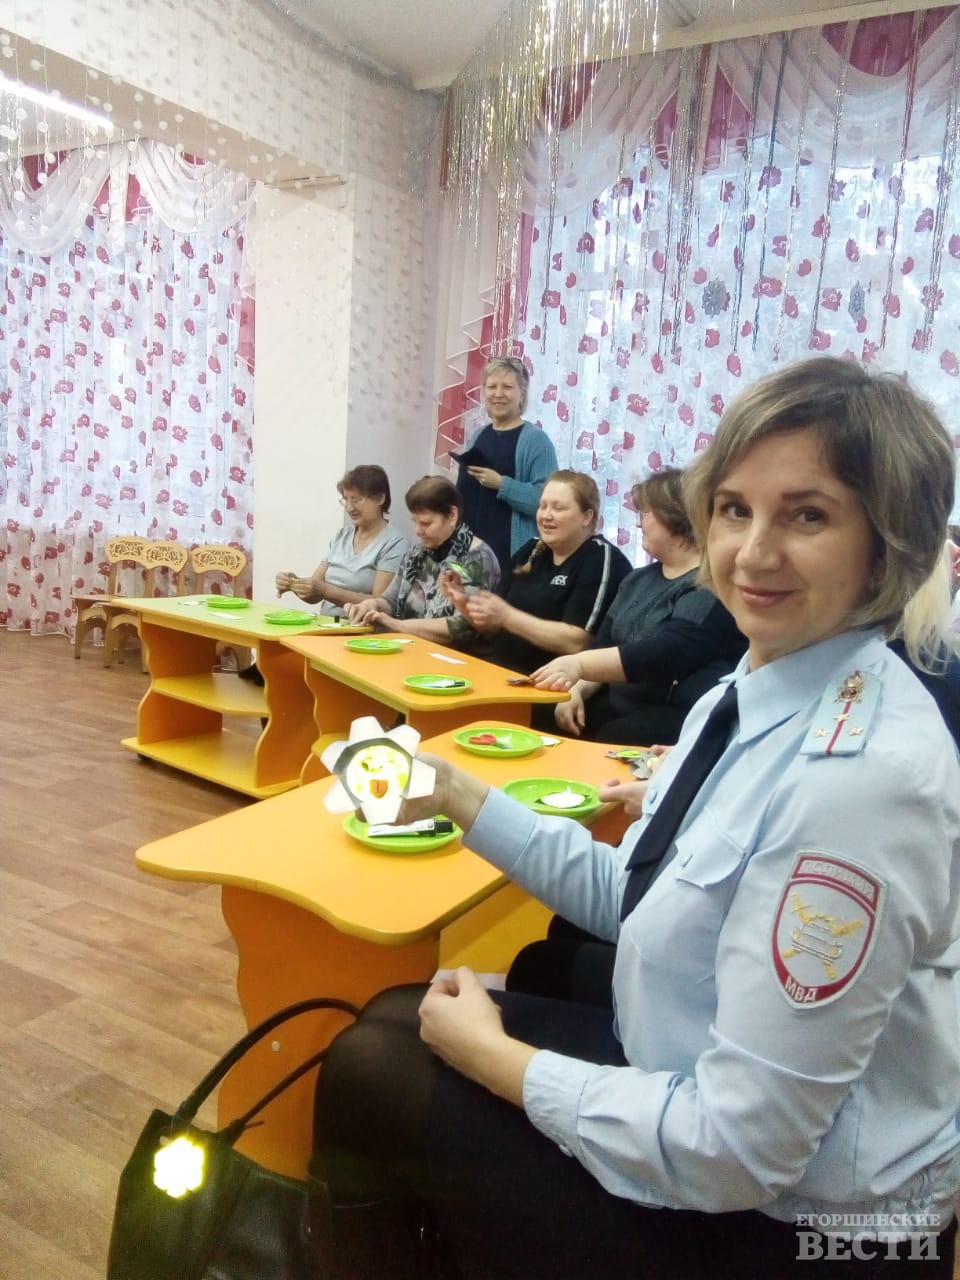 Светлана Шарапова тоже сделала значок безопасности.